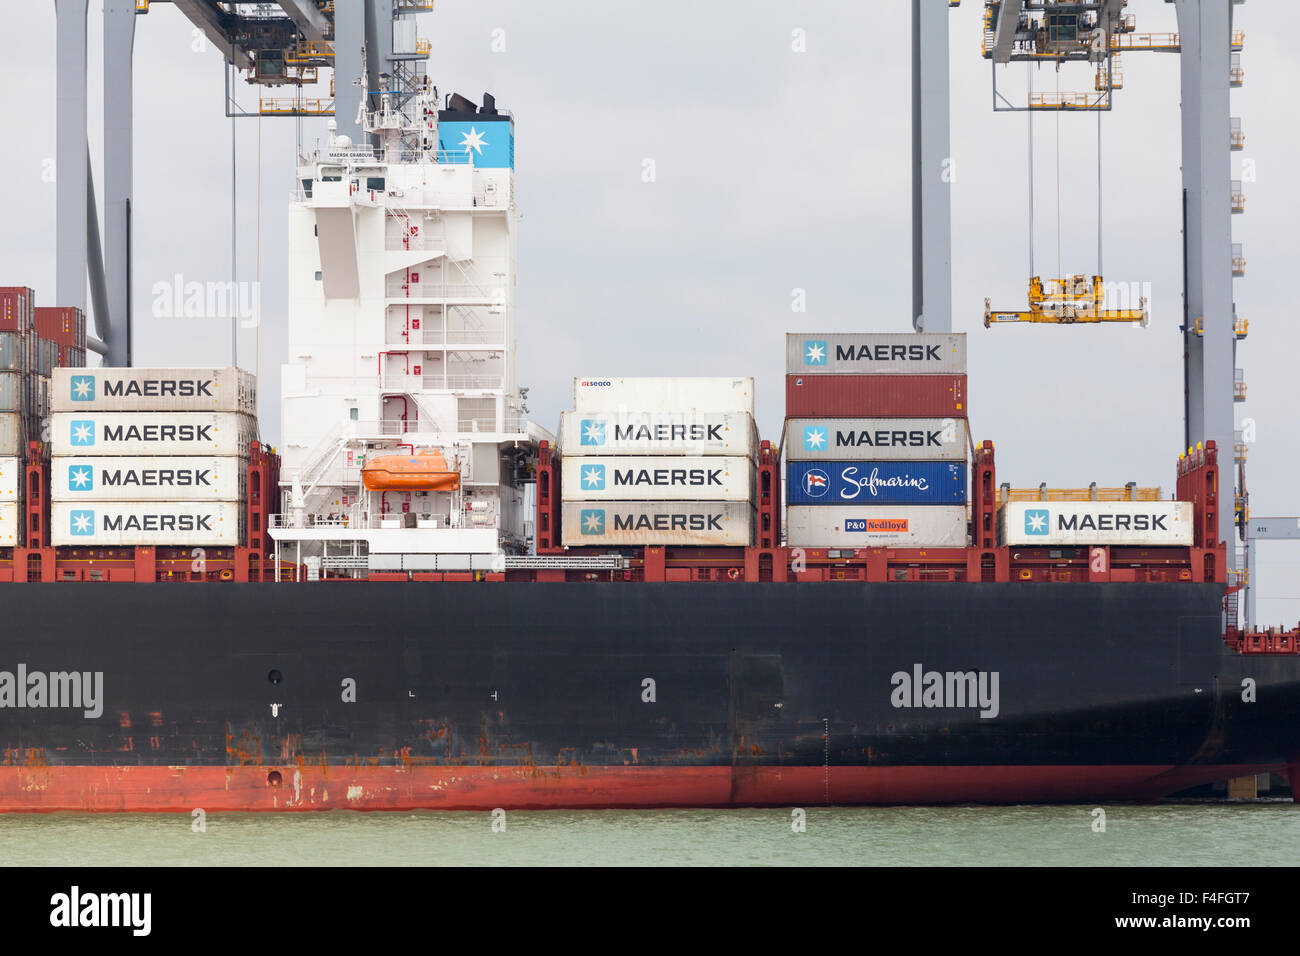 Les conteneurs sont déchargés d'un navire à Tilbury Docks, port de Tilbury sur la Tamise dans l'Essex, Angleterre Banque D'Images